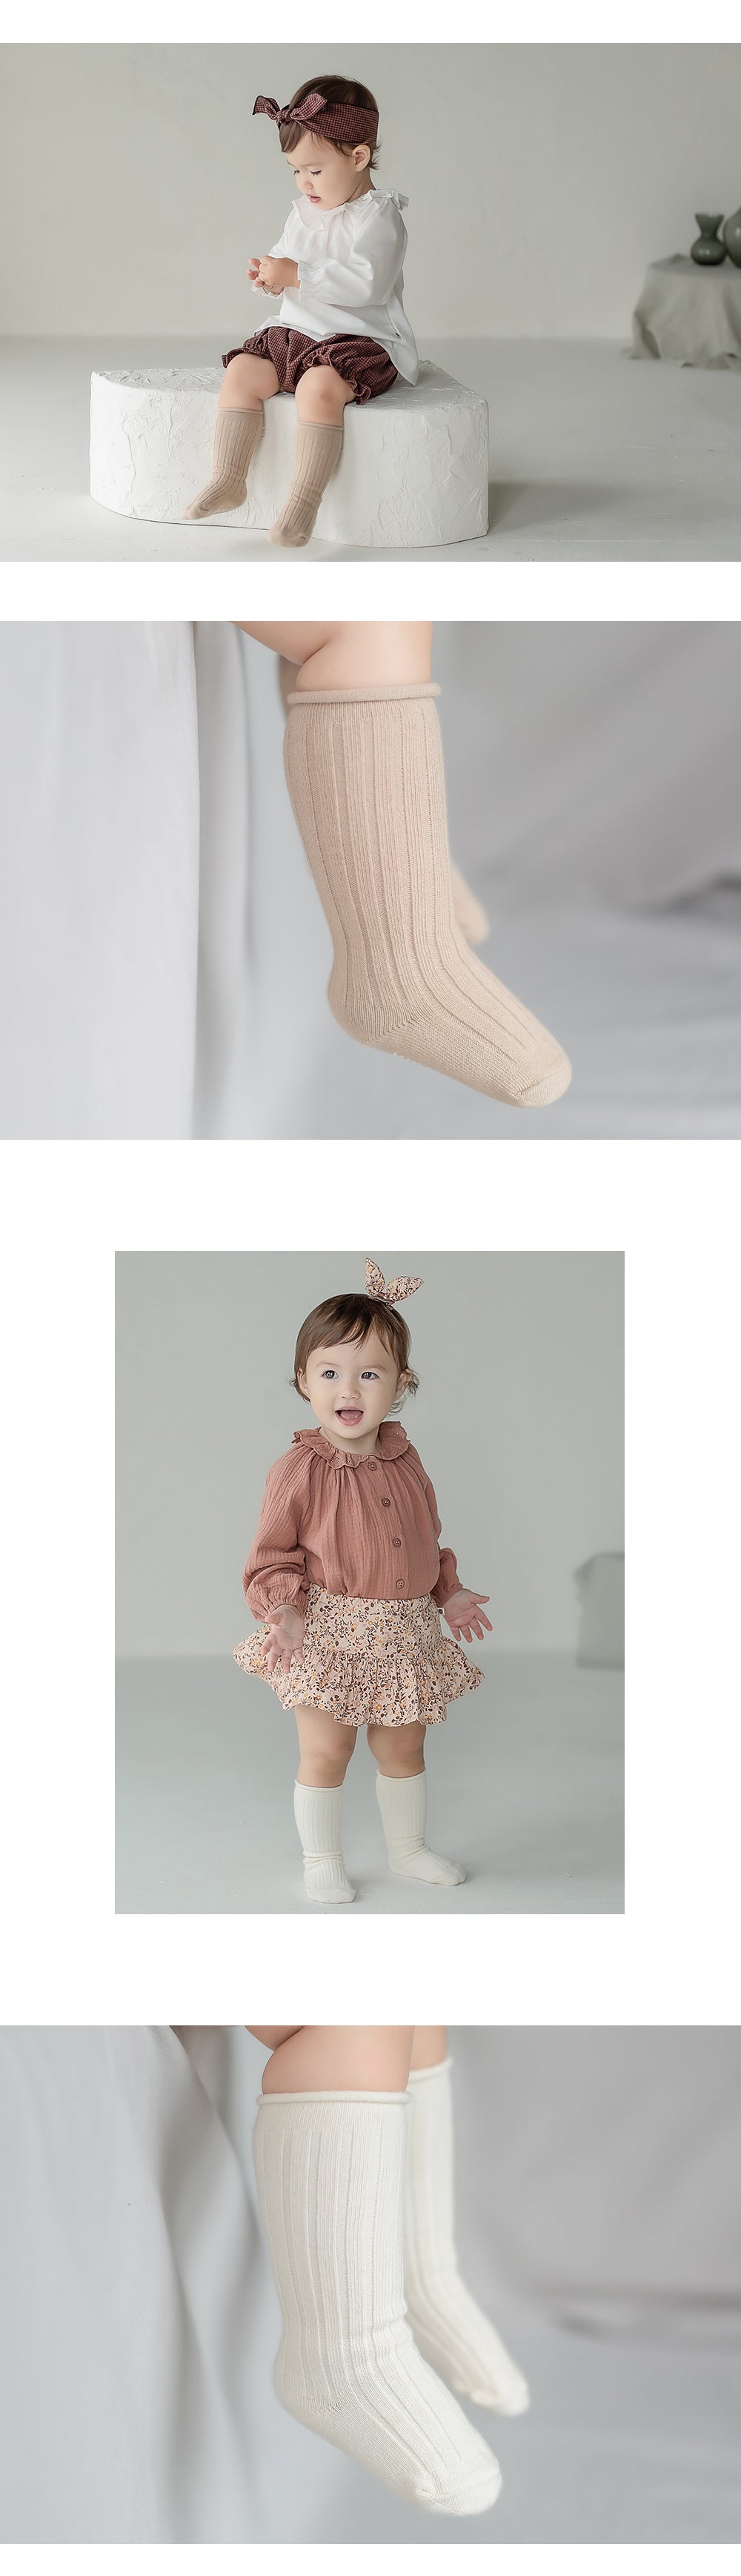 Happy Prince 韓國製 Mako百搭捲邊嬰兒童及膝襪